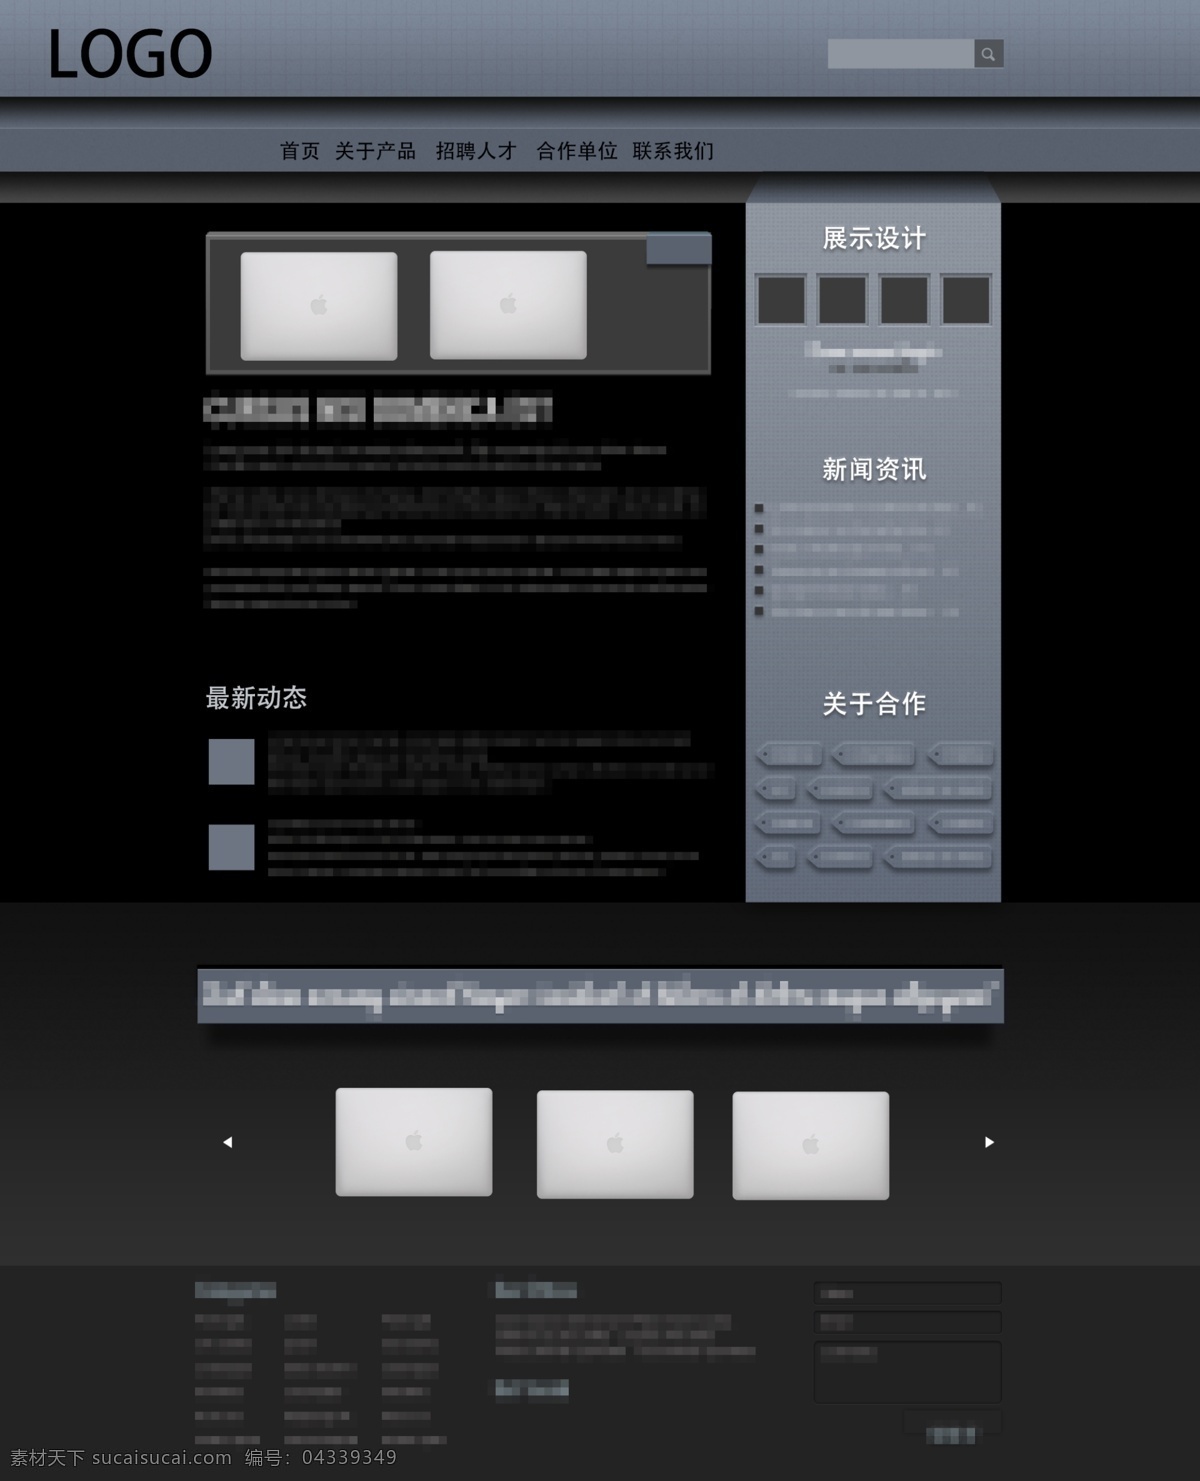 黑色 简约 大气 笔记本 企业网站 网页 企业 网站 时尚 潮流 灰色 简洁